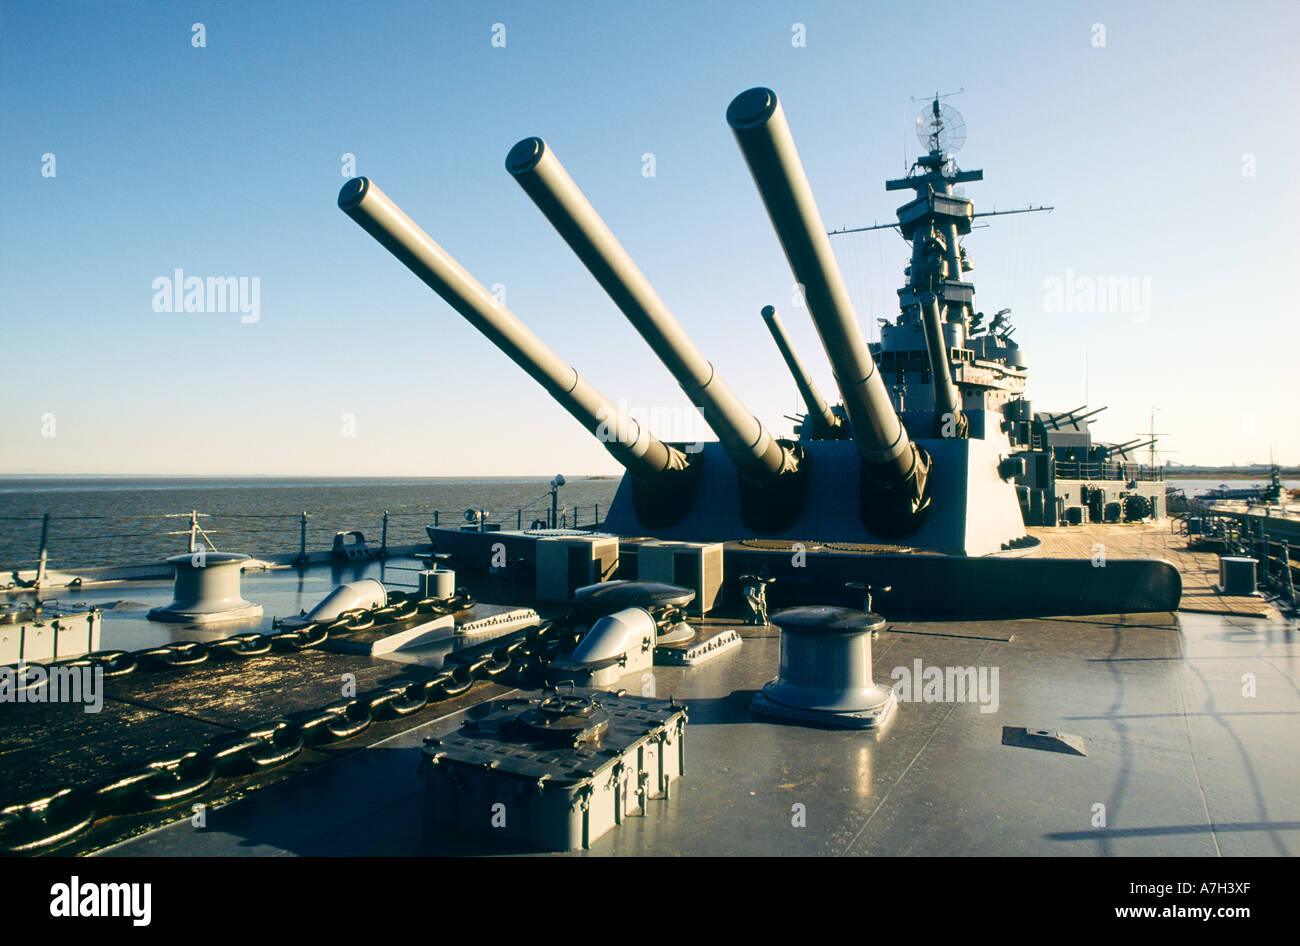 WW2 acorazado USS Alabama en exhibición en Battleship Memorial Park, en la Costa del Golfo, de Mobile, Alabama, Estados Unidos. Cubierta de proa gun torretas Foto de stock